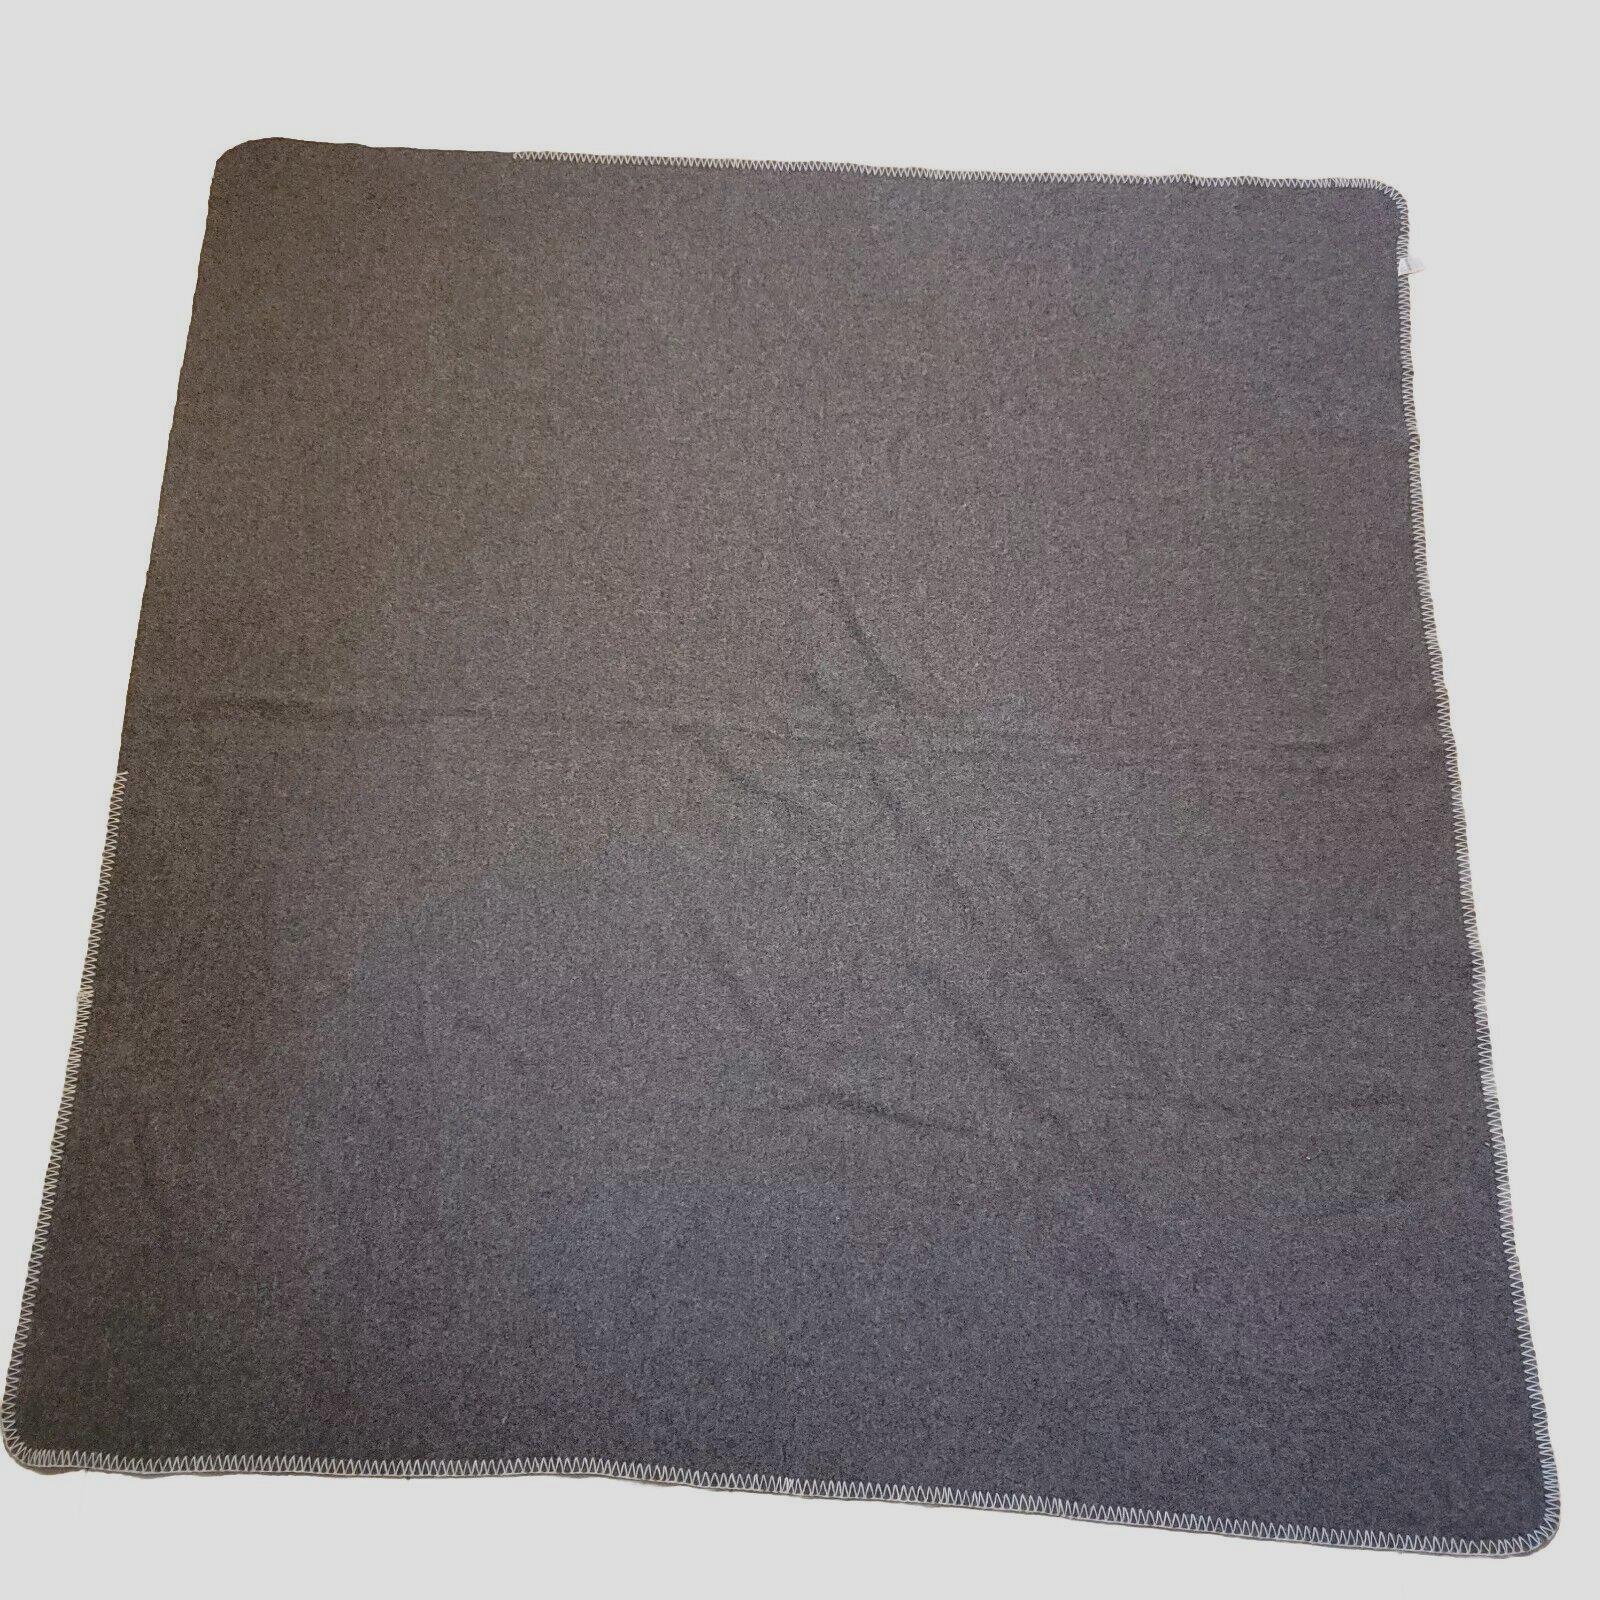 Woolmark 100% Wool Blanket 90x86 in Gray Made in France